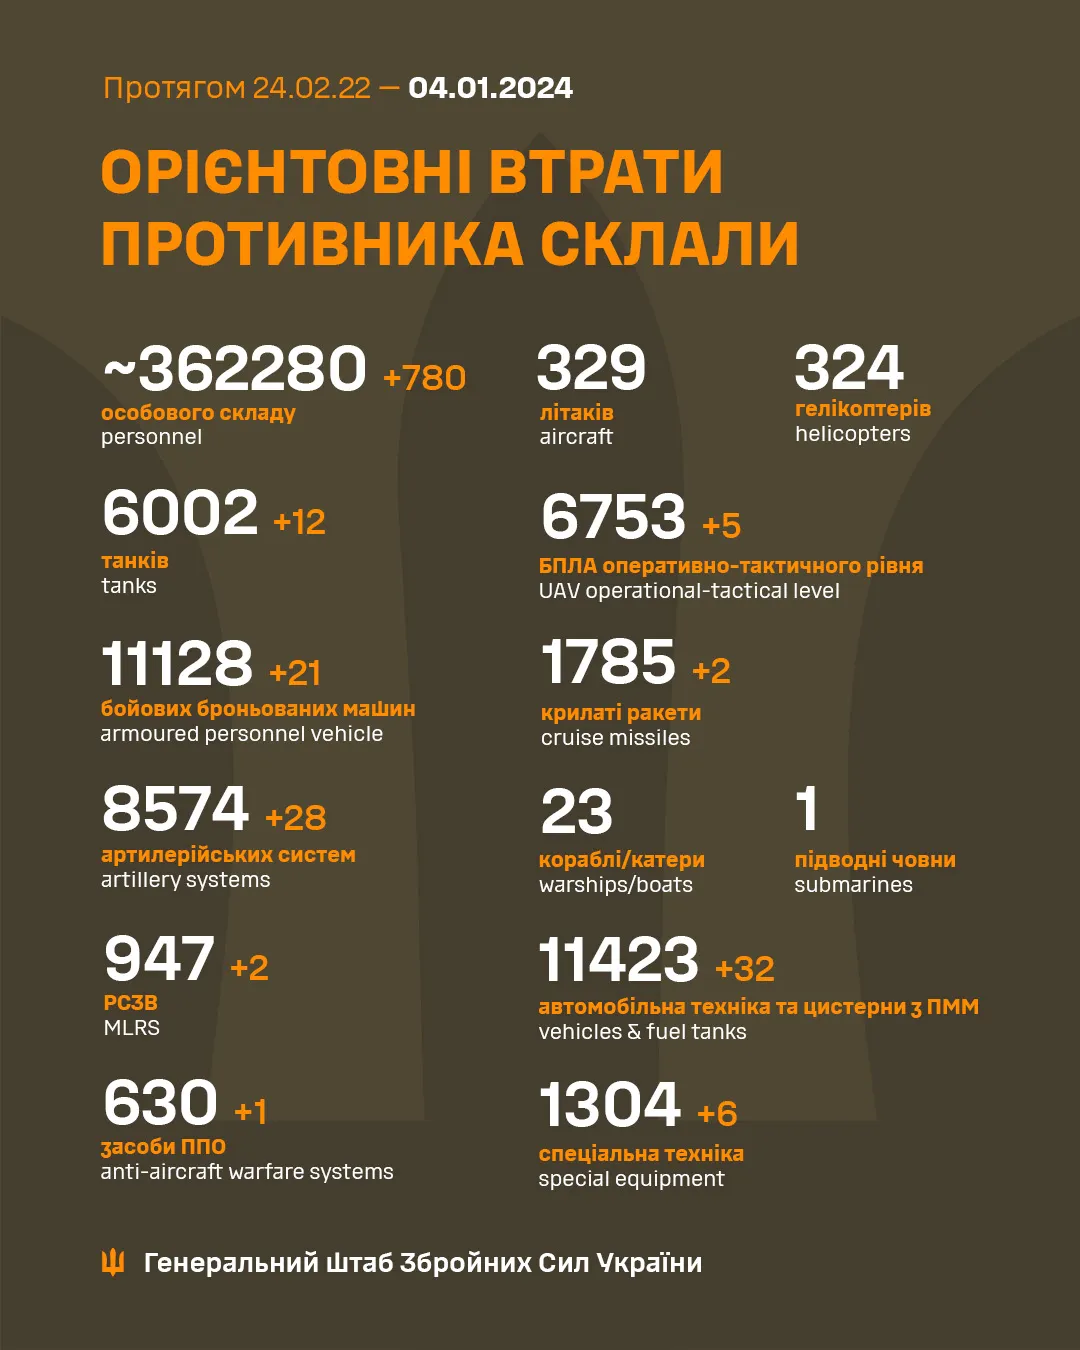 Какие потери России по состоянию на 4 января 2024 года